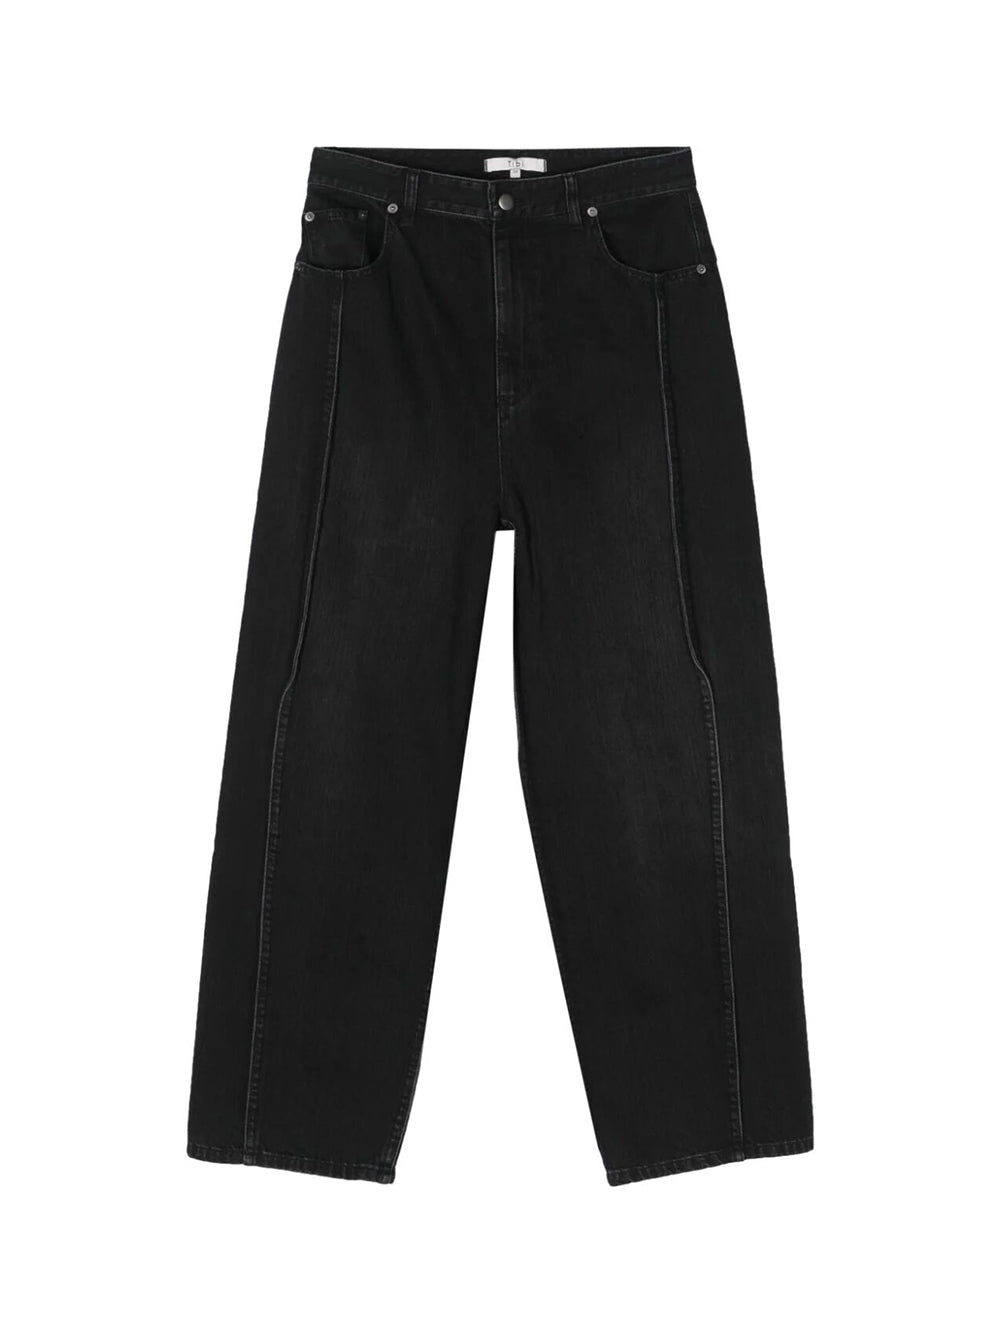 Vintage black denim tuck jeans